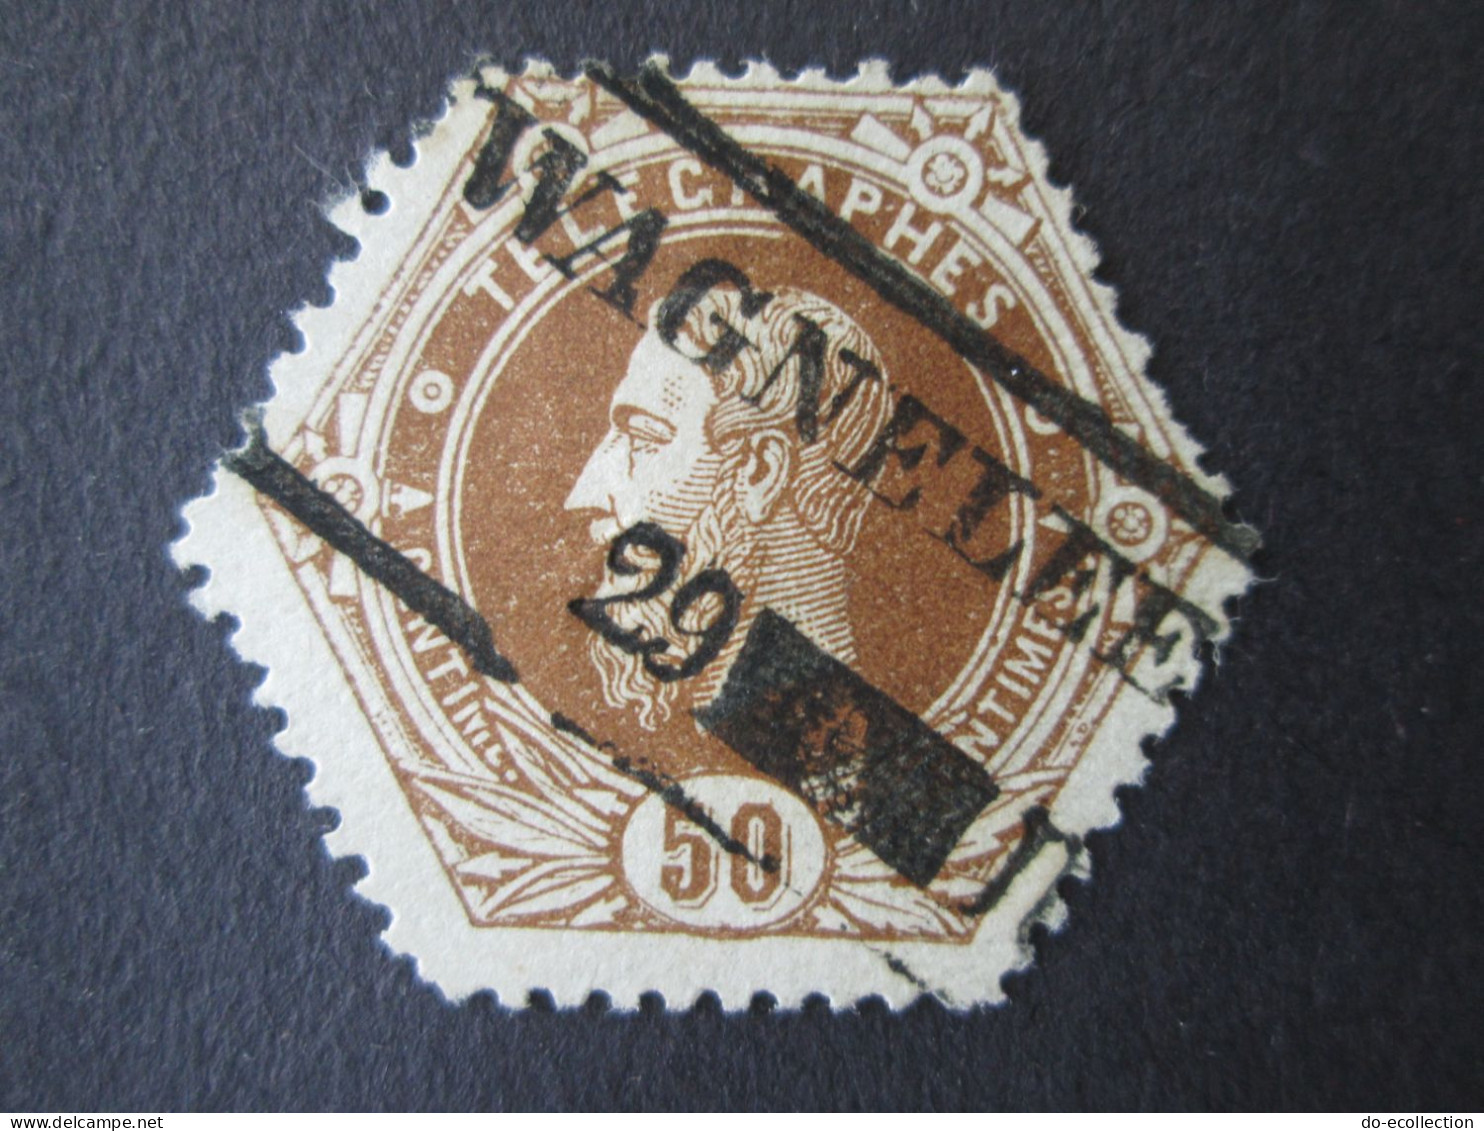 BELGIQUE Timbre Télégraphe 1871 50c WAGNELEE Leopold II Belgie Belgium Timbre Stamp - Telegraphenmarken [TG]